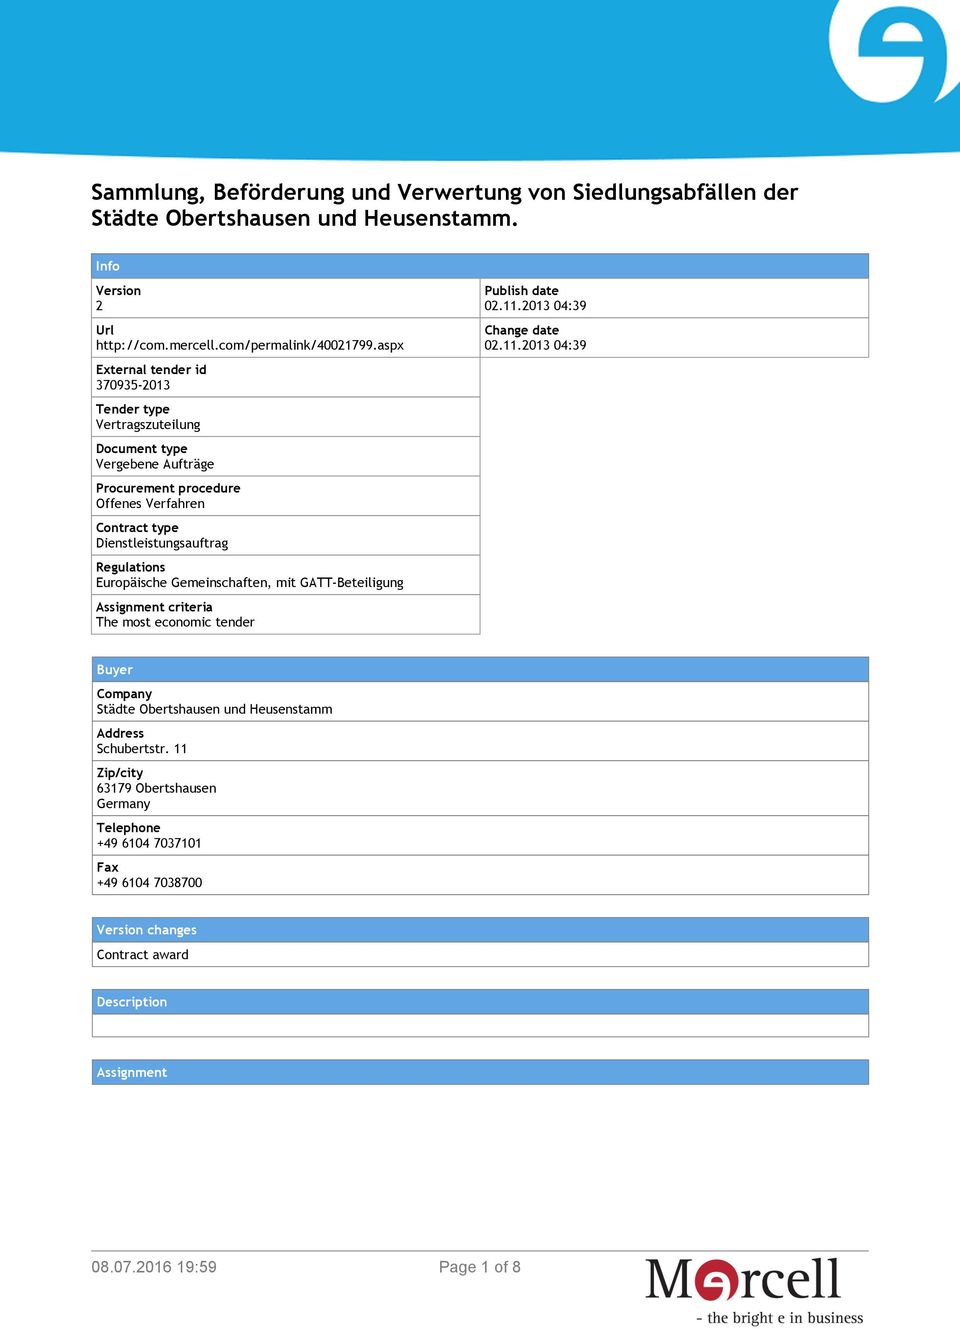 Regulations Europäische Gemeinschaften, mit GATT-Beteiligung Assignment criteria The most economic tender Publish date 02.11.